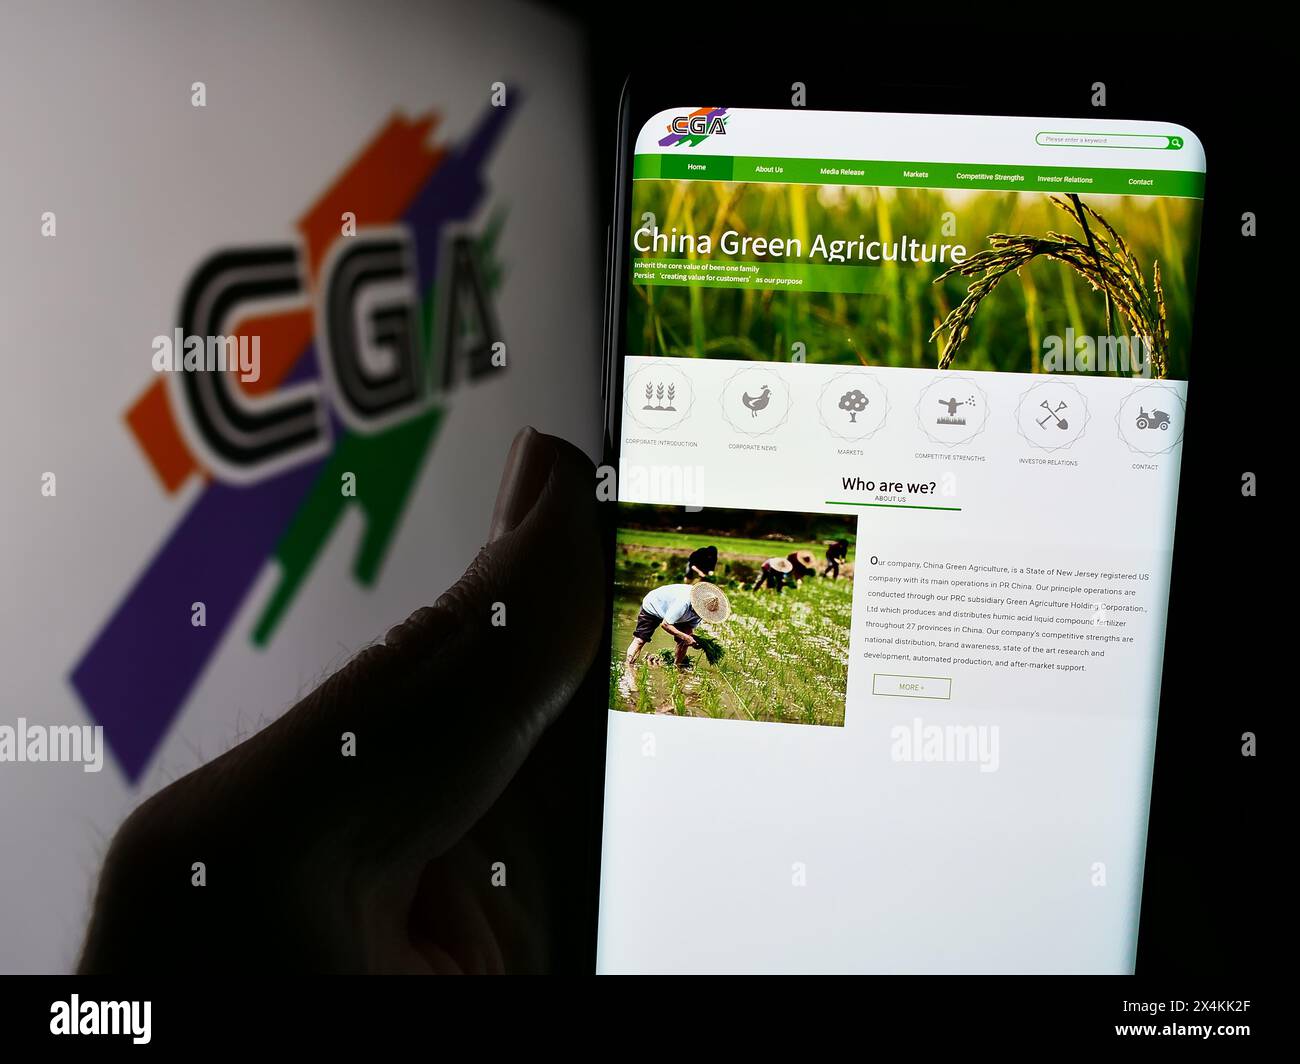 Personne tenant le téléphone portable avec la page Web de la société chinoise China Green Agriculture Inc (CGA) devant le logo. Concentrez-vous sur le centre de l'écran du téléphone. Banque D'Images